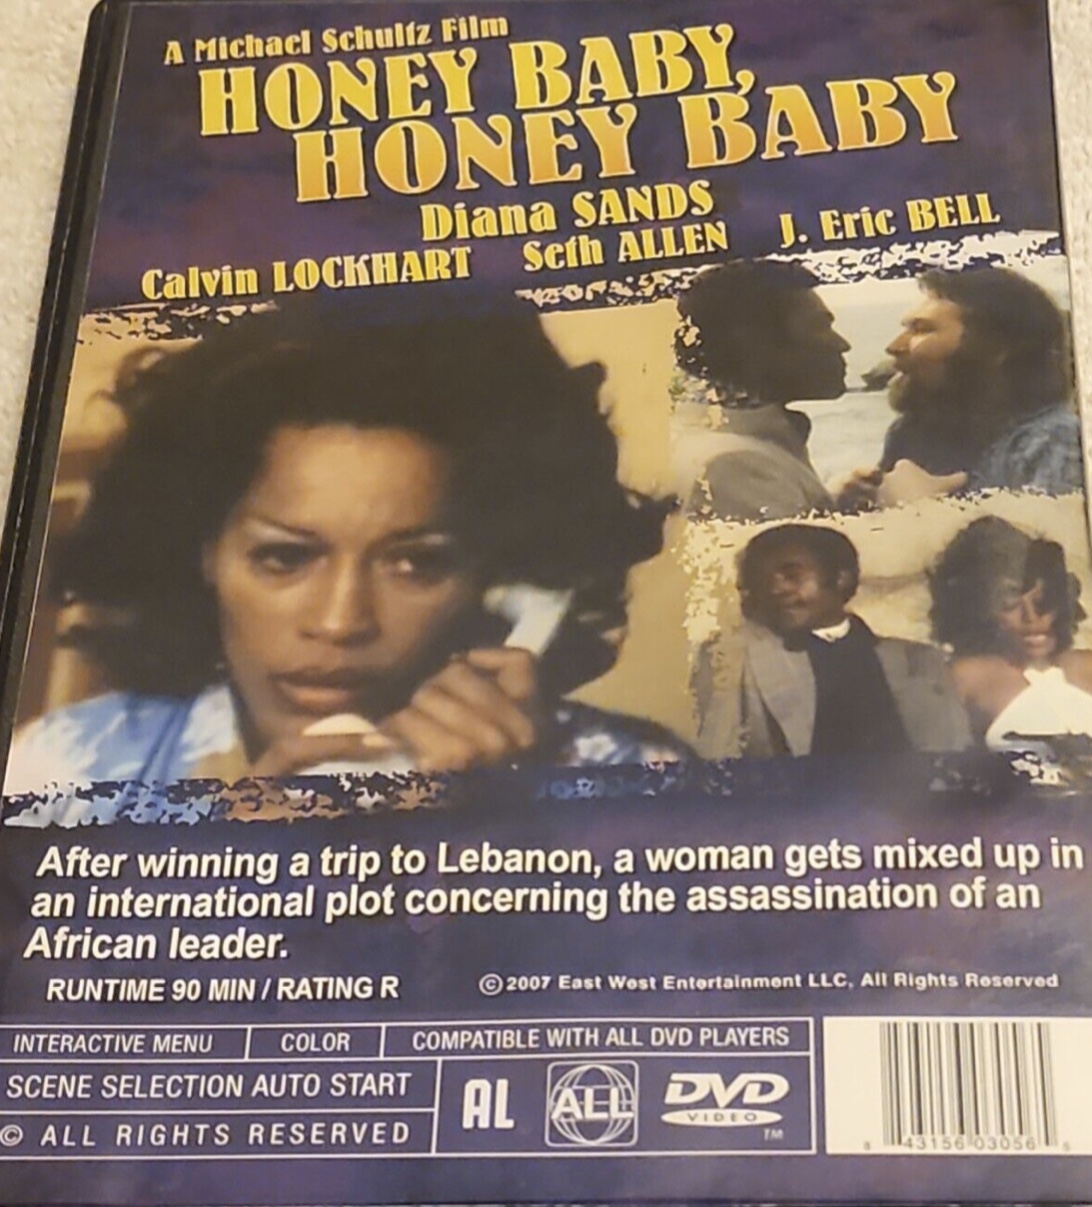 Honeybaby, Honeybaby (1974) Screenshot 4 